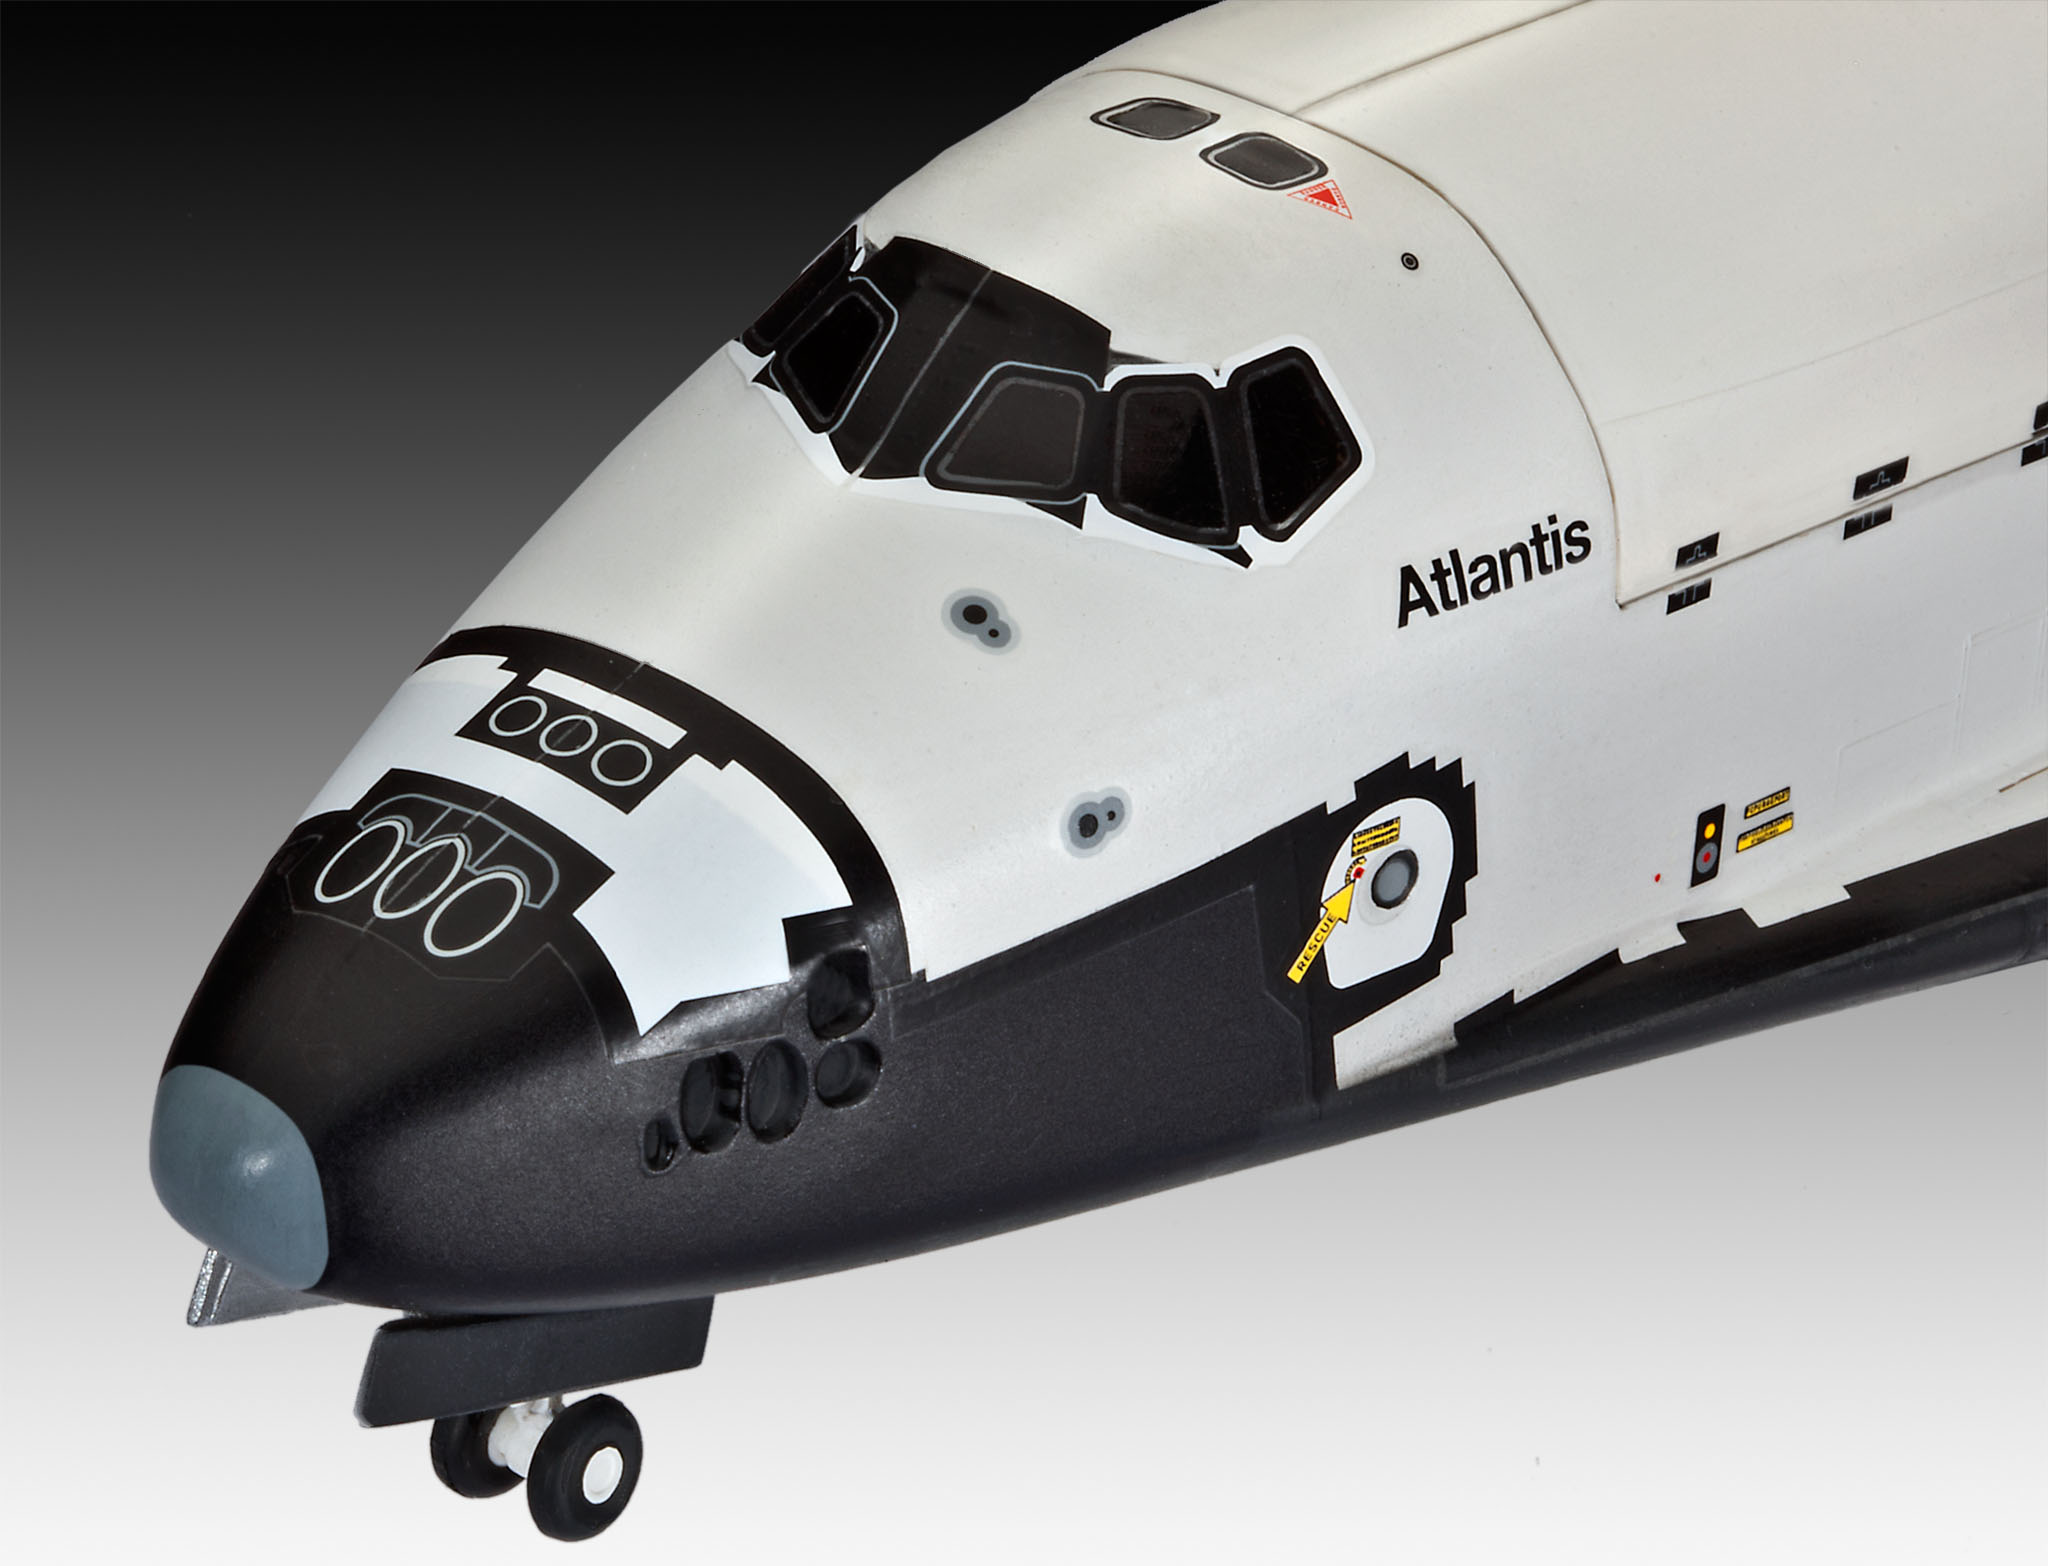 Space Shuttle Atlantis - Space Shuttle Atlantis 1:144